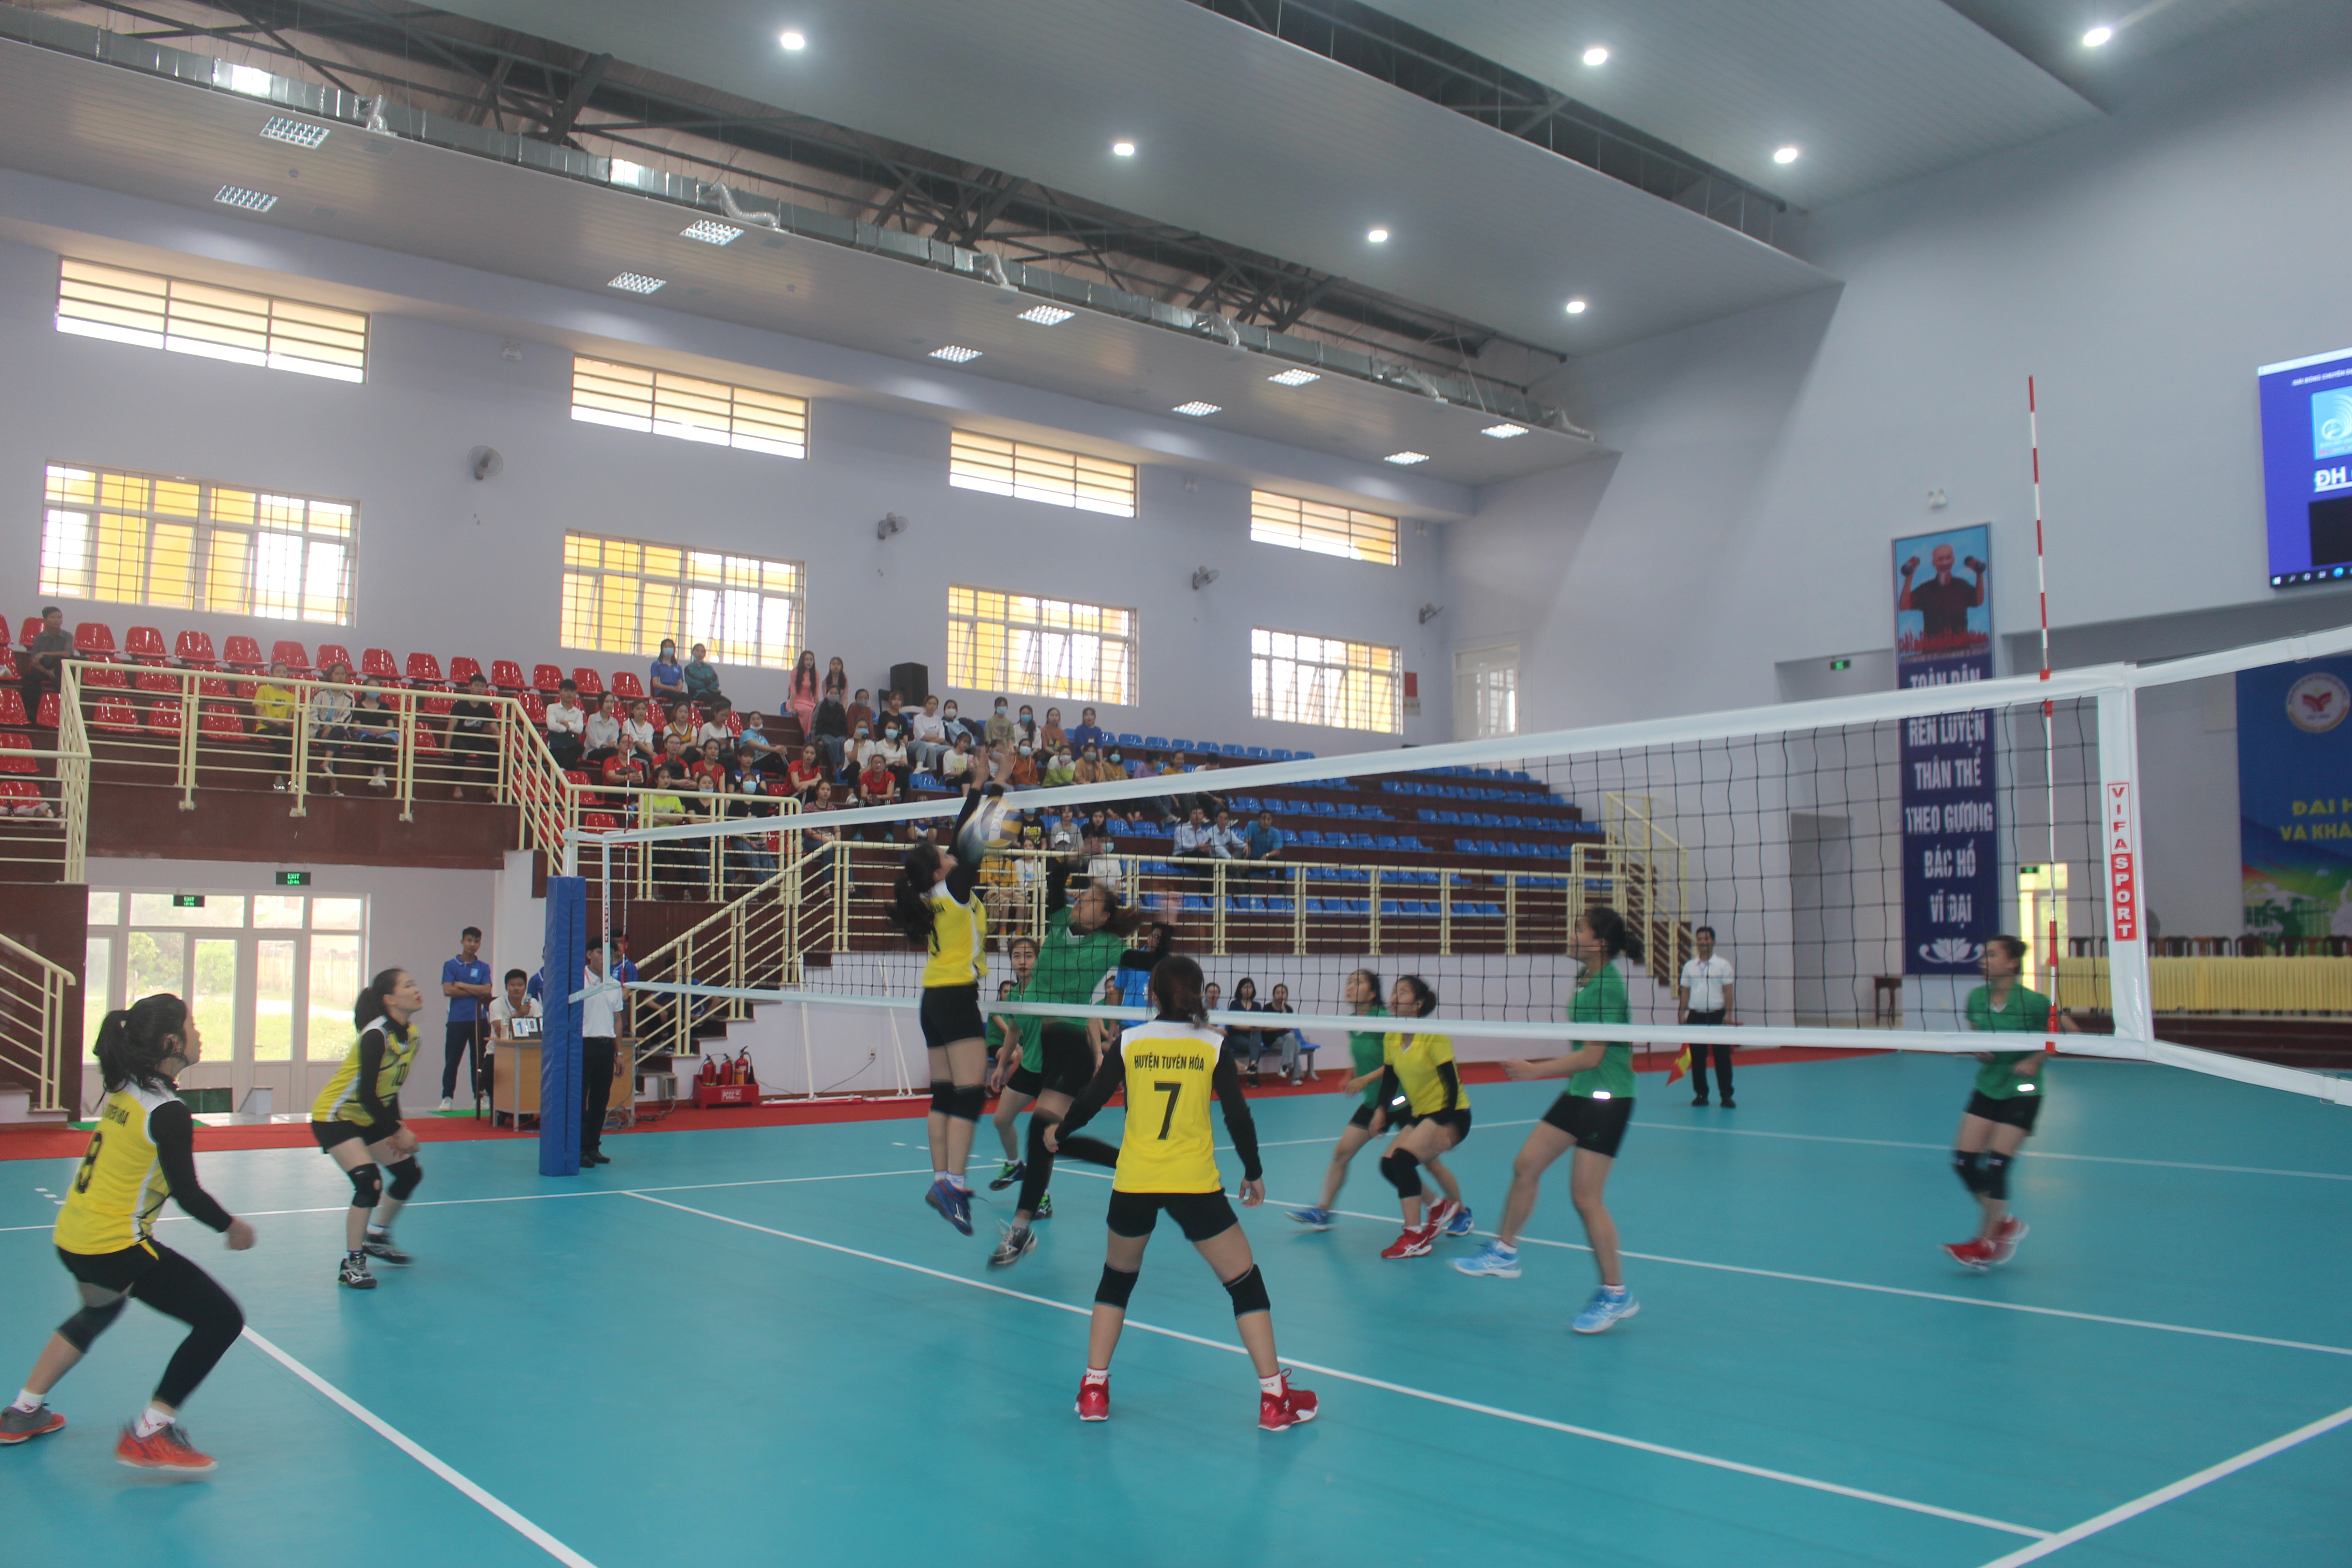 Trận khai mạc diễn ra giữa đội bóng chuyền nữ Trường Đại học Quảng Bình và đội bóng chuyền nữ huyện Tuyên Hóa.